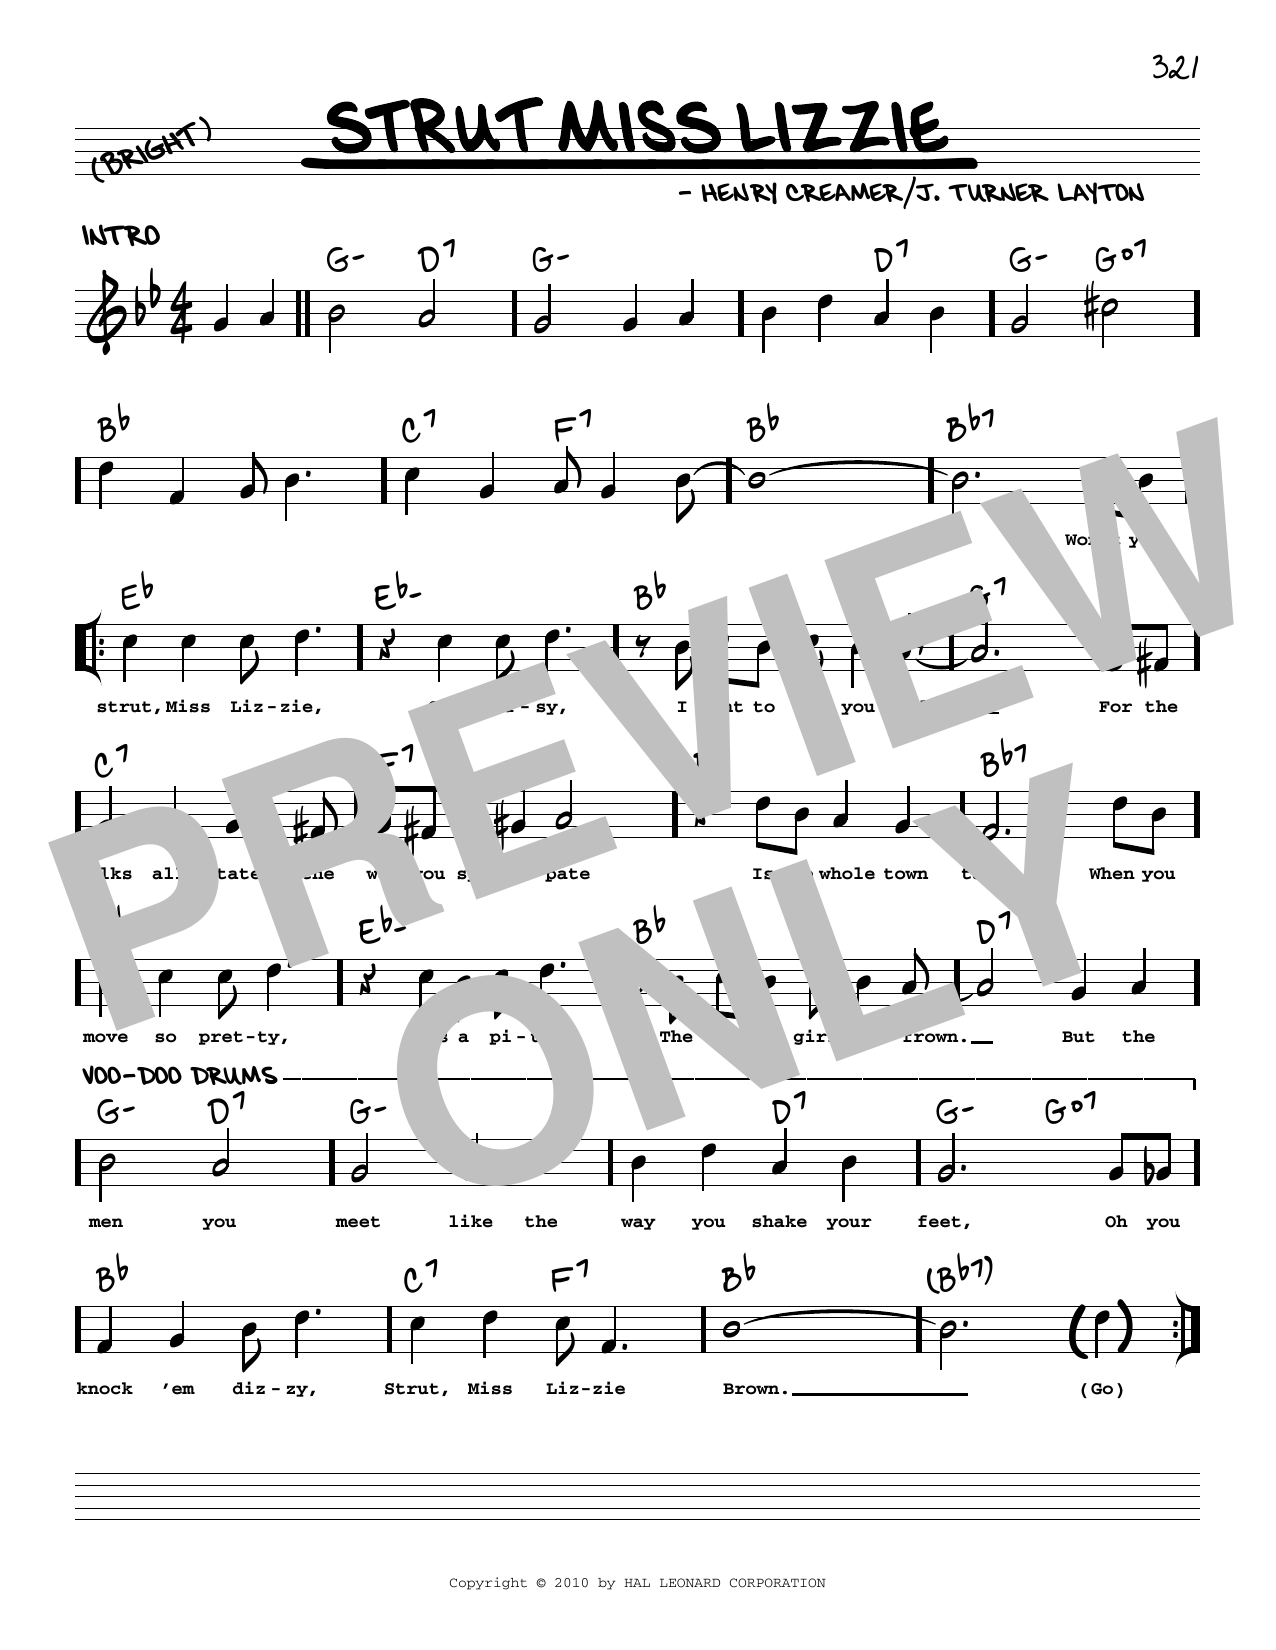 Download Henry Creamer Strut Miss Lizzie (arr. Robert Rawlins) Sheet Music